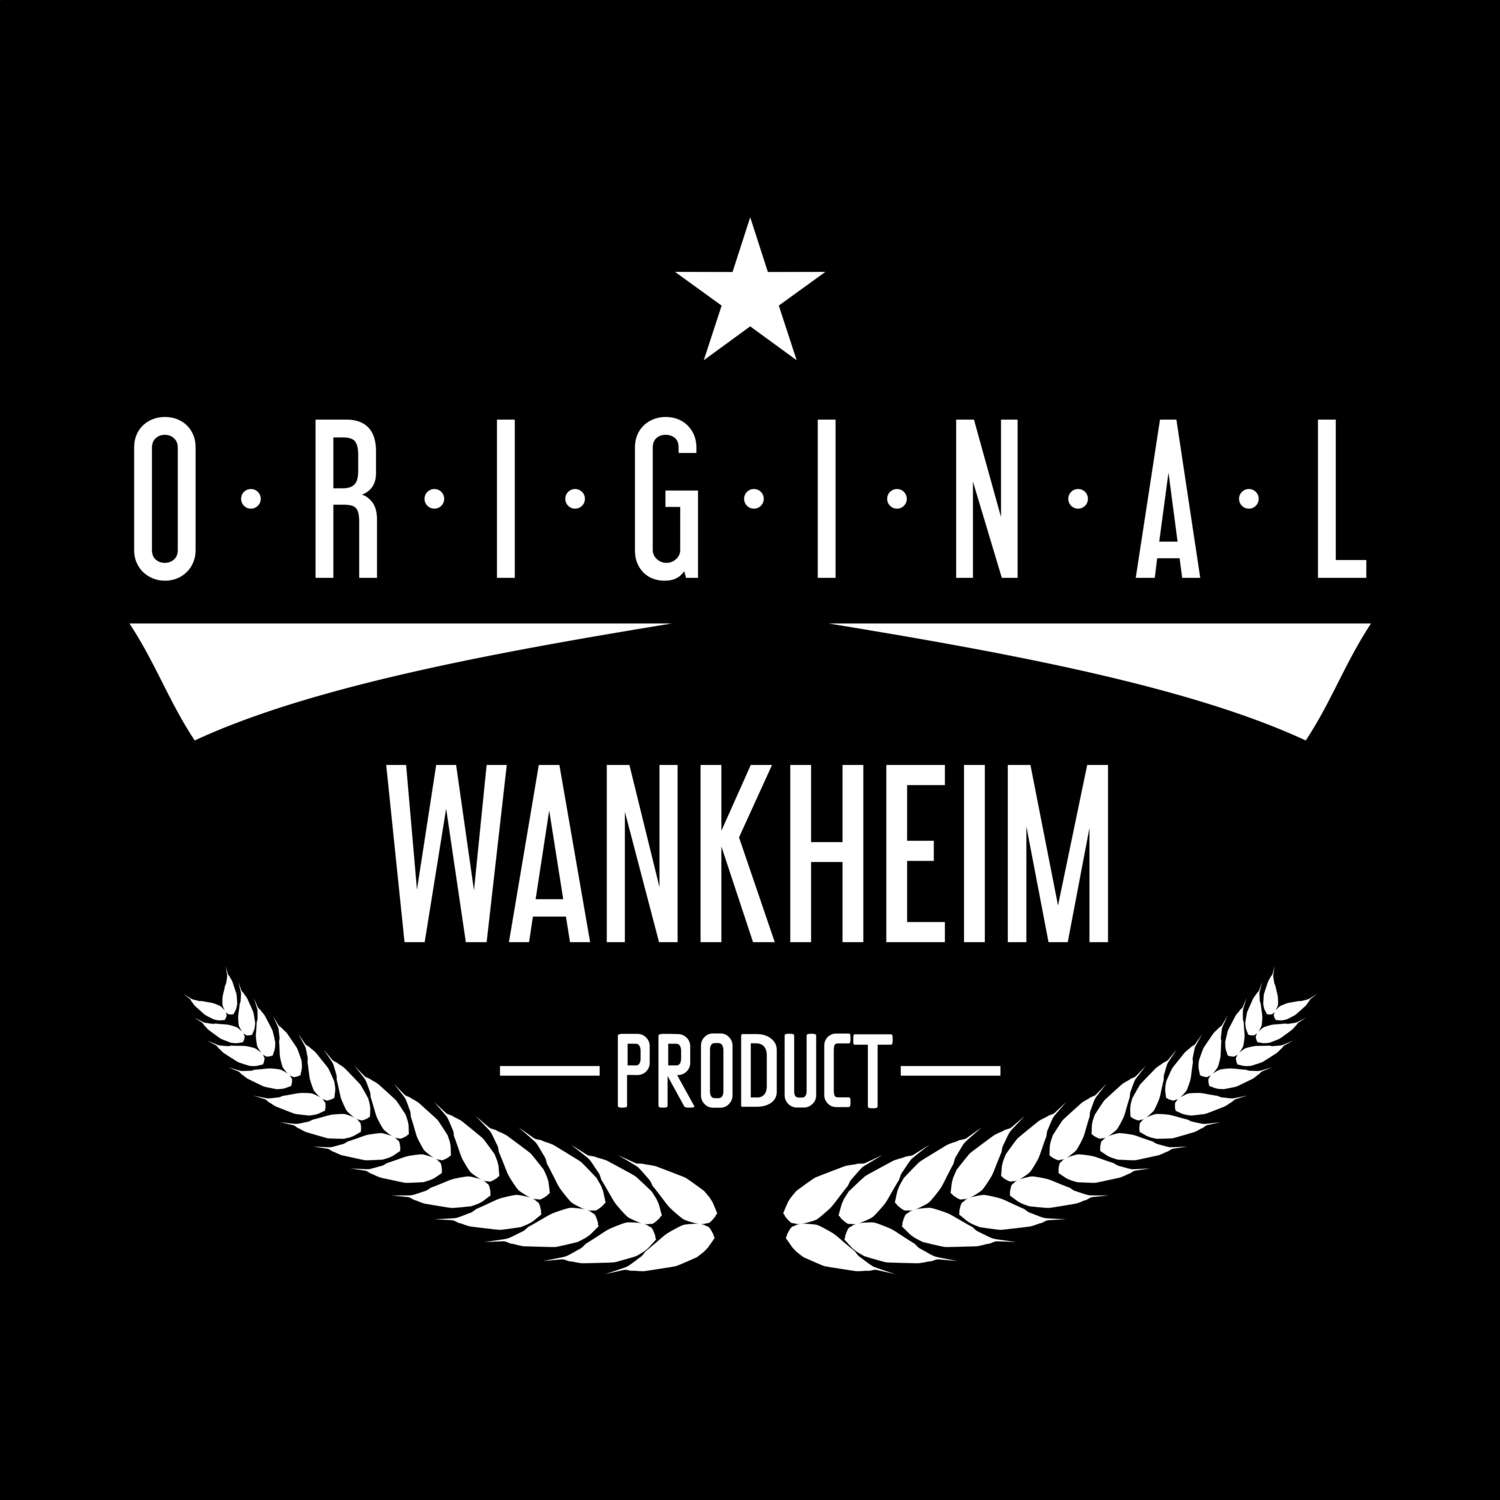 Wankheim T-Shirt »Original Product«